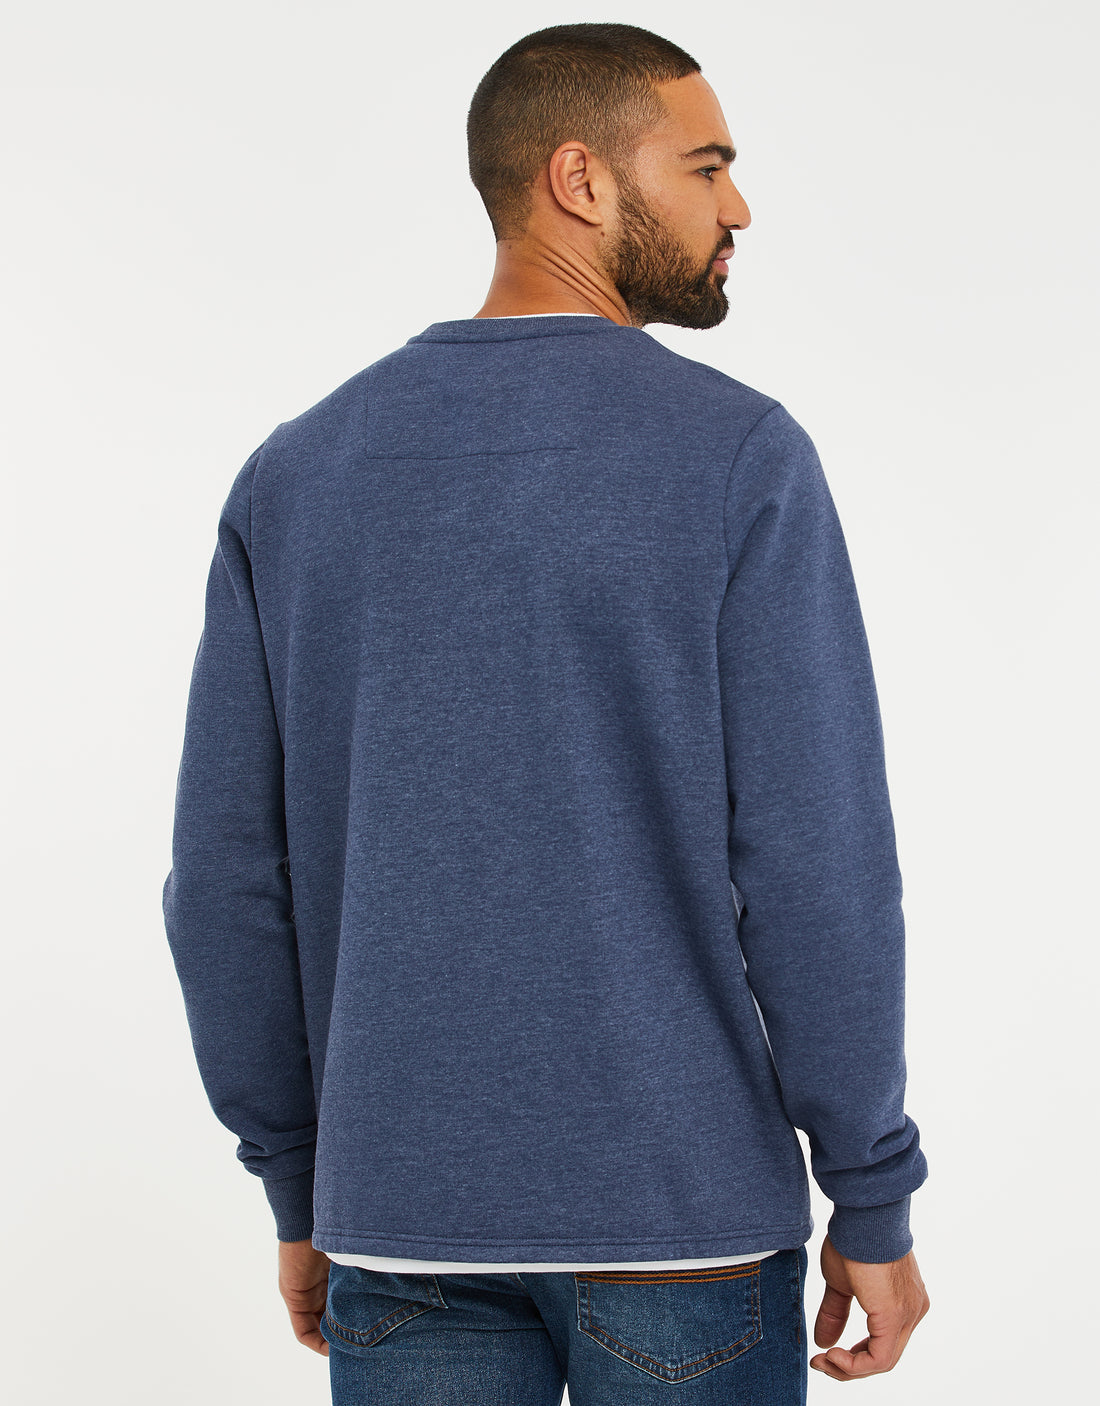 Men's Denim Blue Crew Neck Mock T-Shirt Fleece Sweatshirt – Threadbare